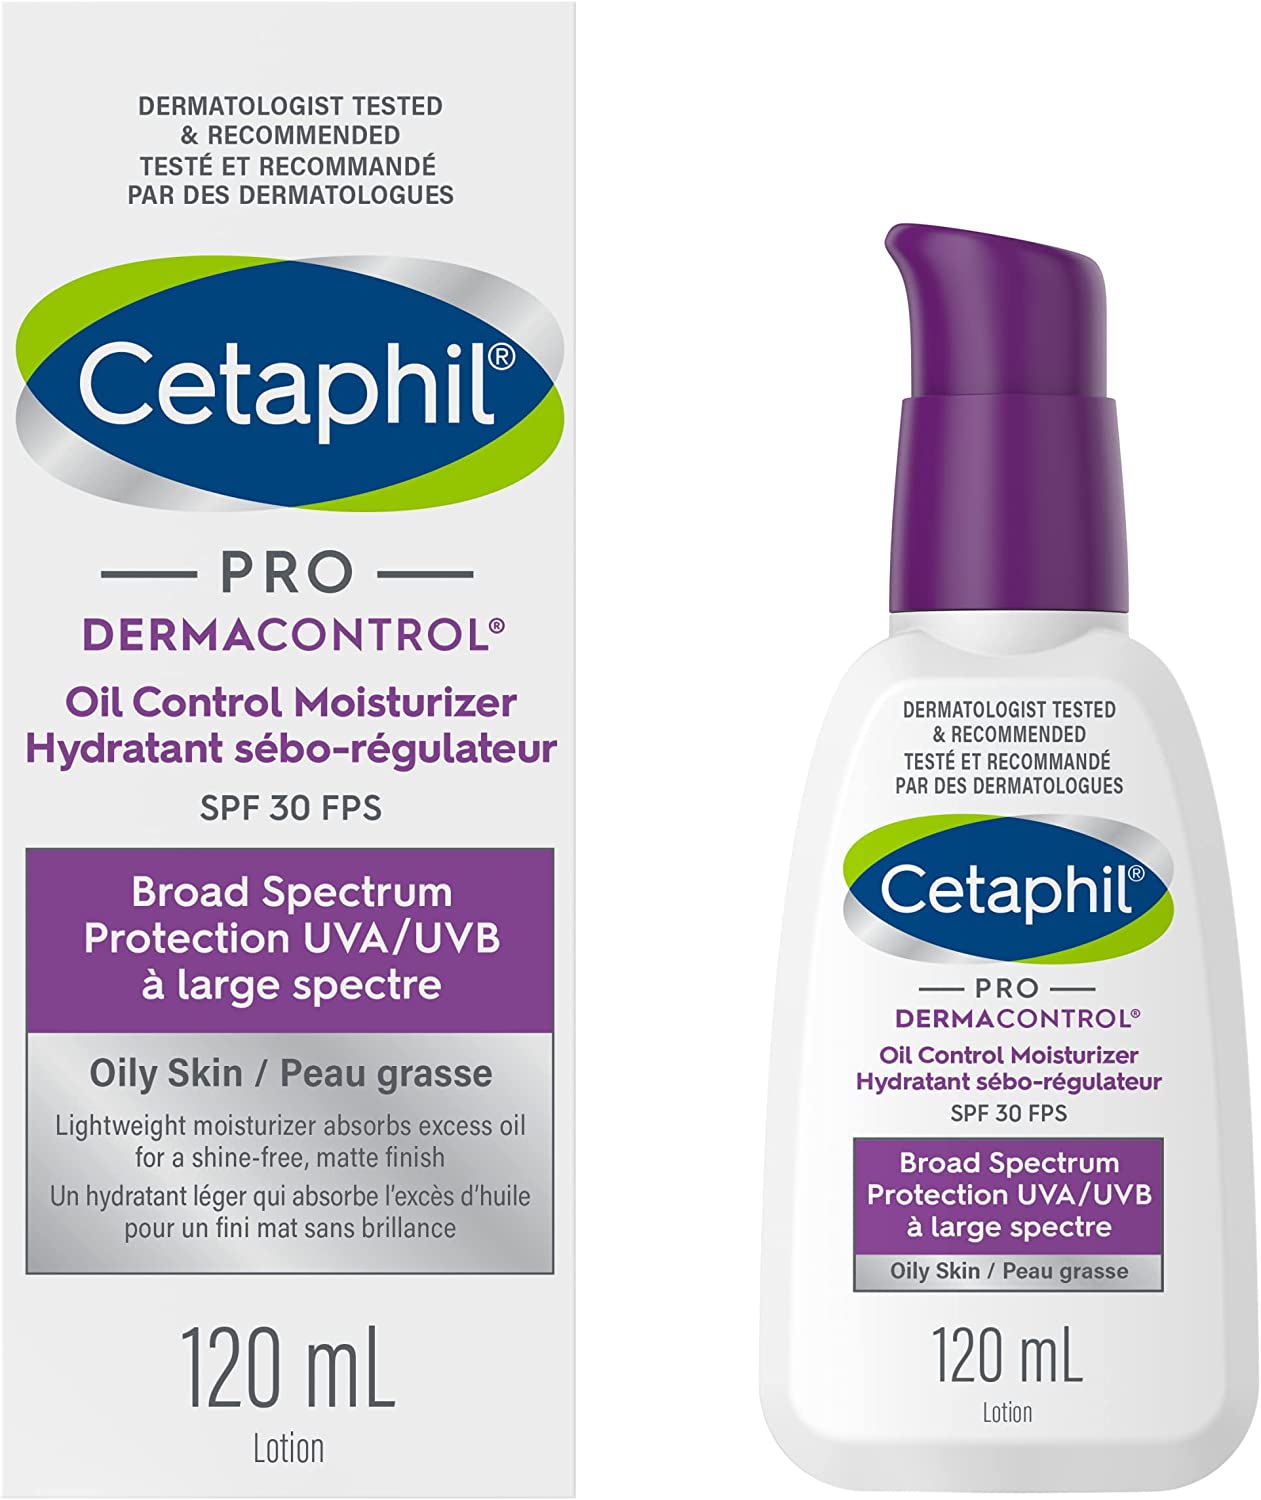 Cetaphil oil control moisturizer